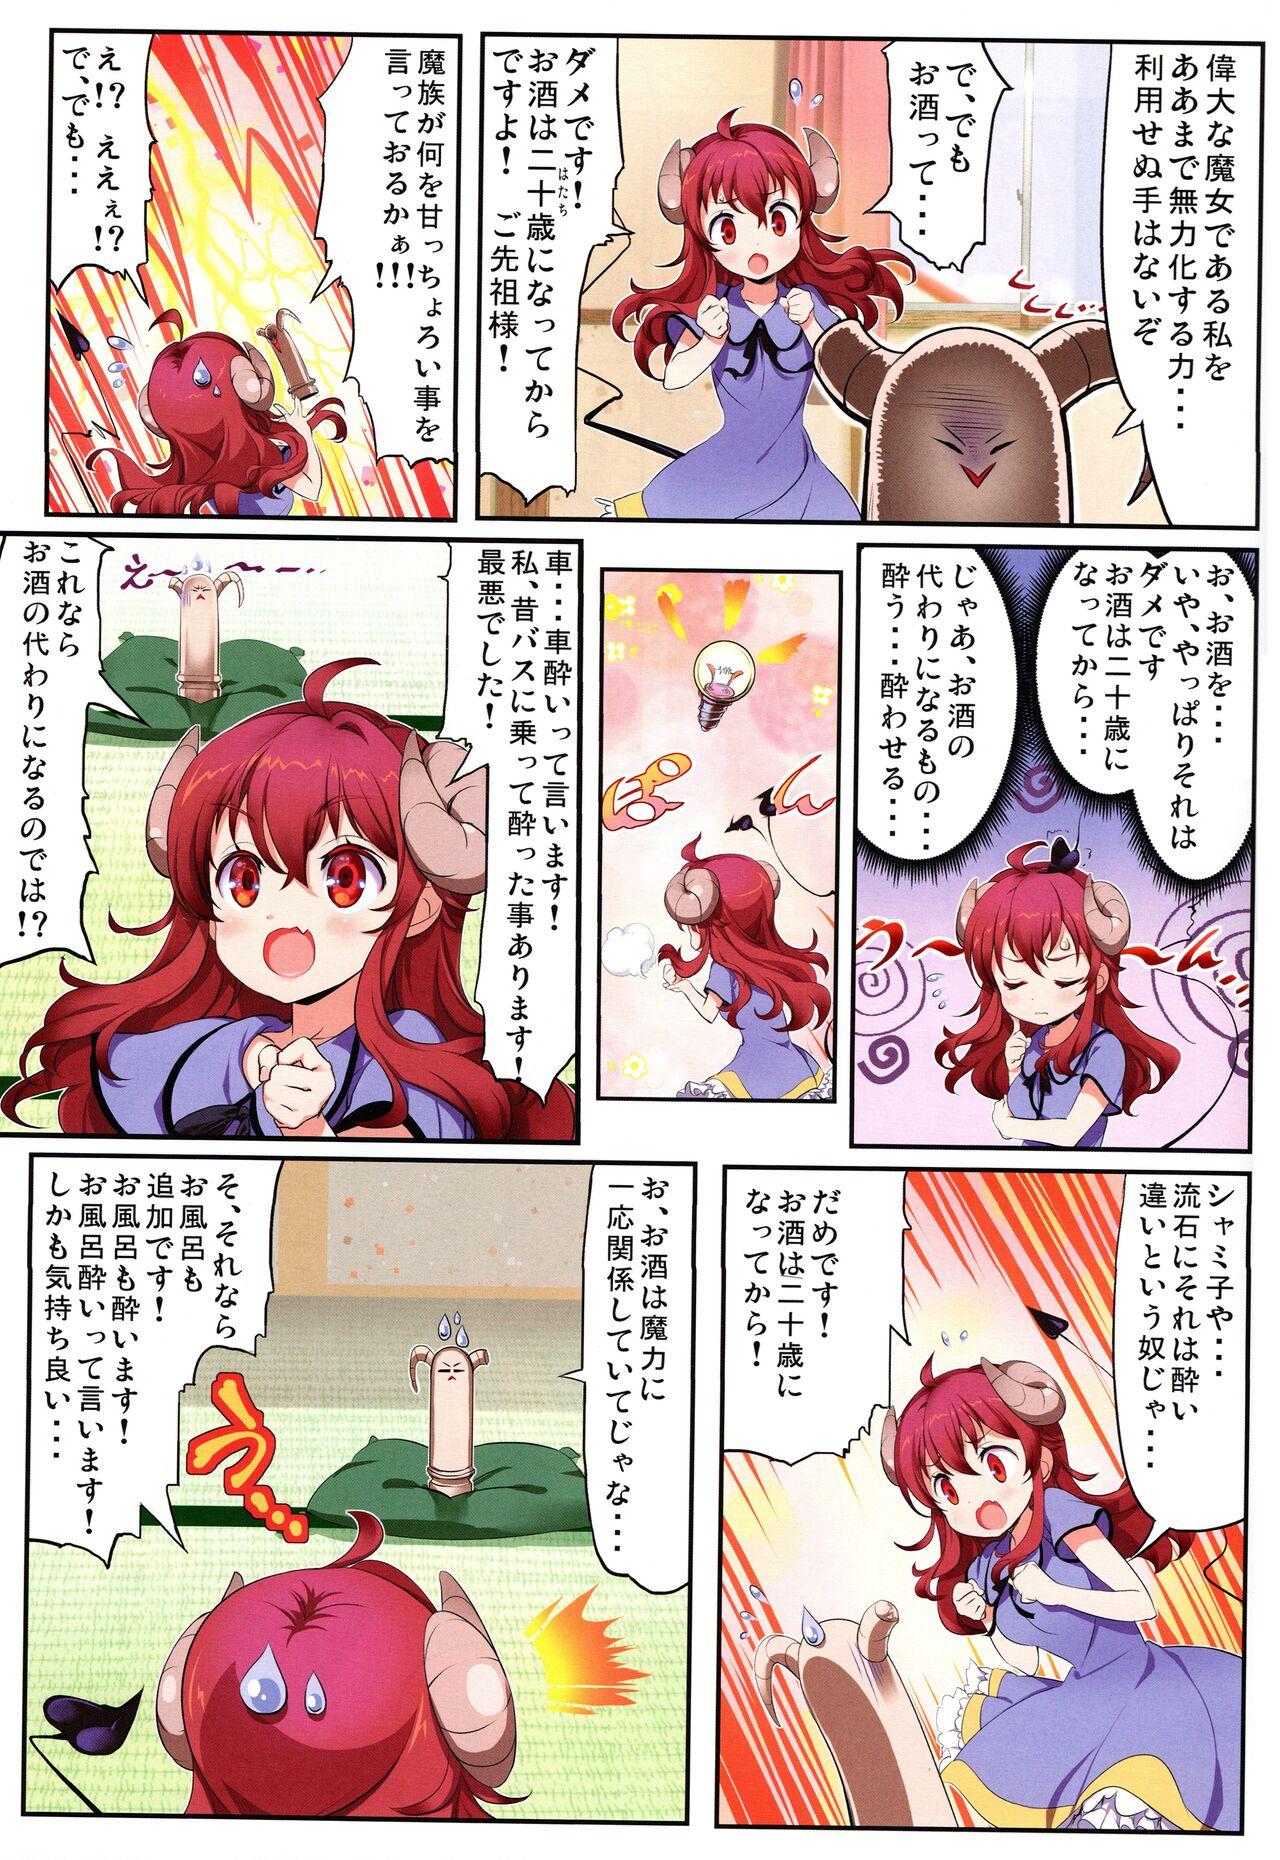 Pack Yume wa Toriatsukai Chuui Nite - Machikado mazoku | the demon girl next door Thylinh - Page 5